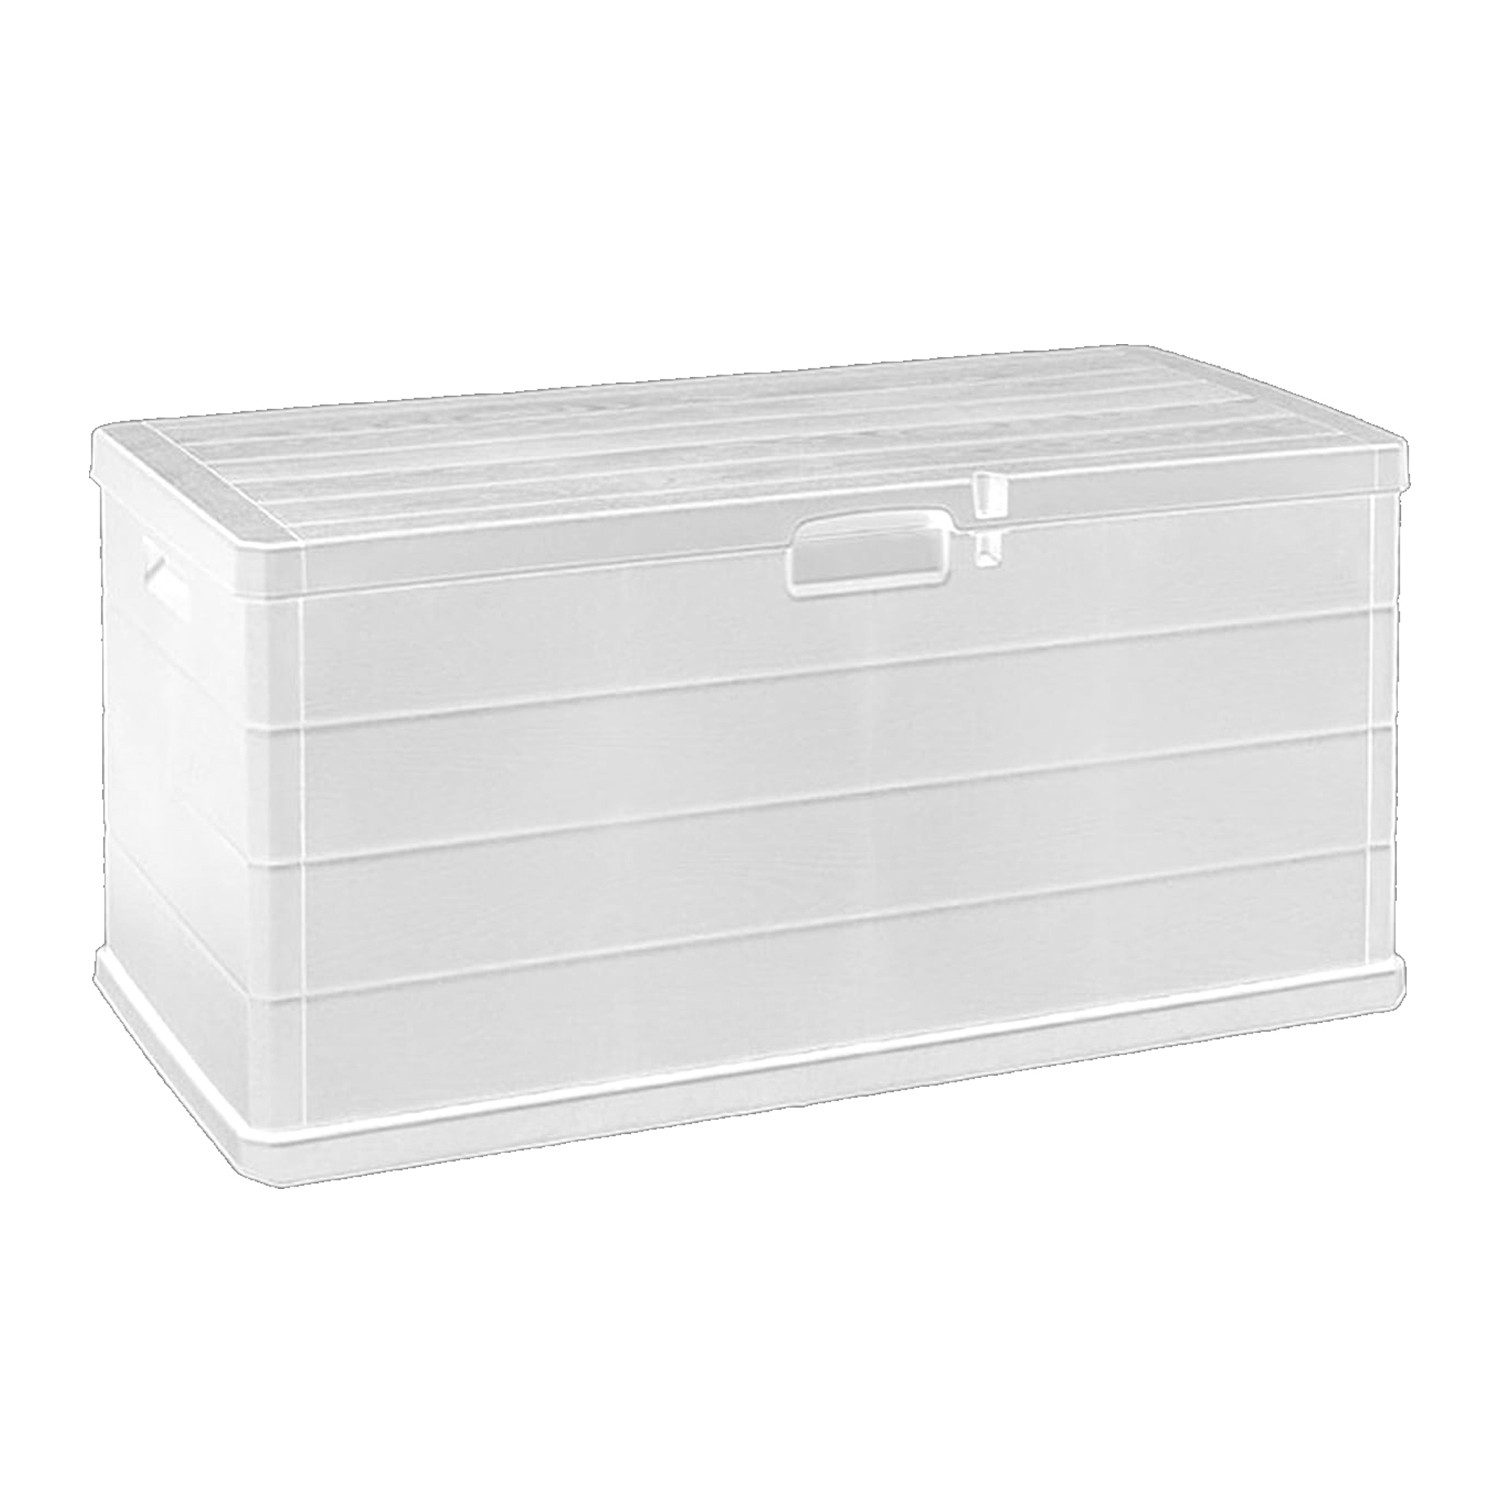 Mojawo Hängeaufbewahrung XL Auflagenbox Sitzbank 2 Personen Kunststoff Weiß 340L